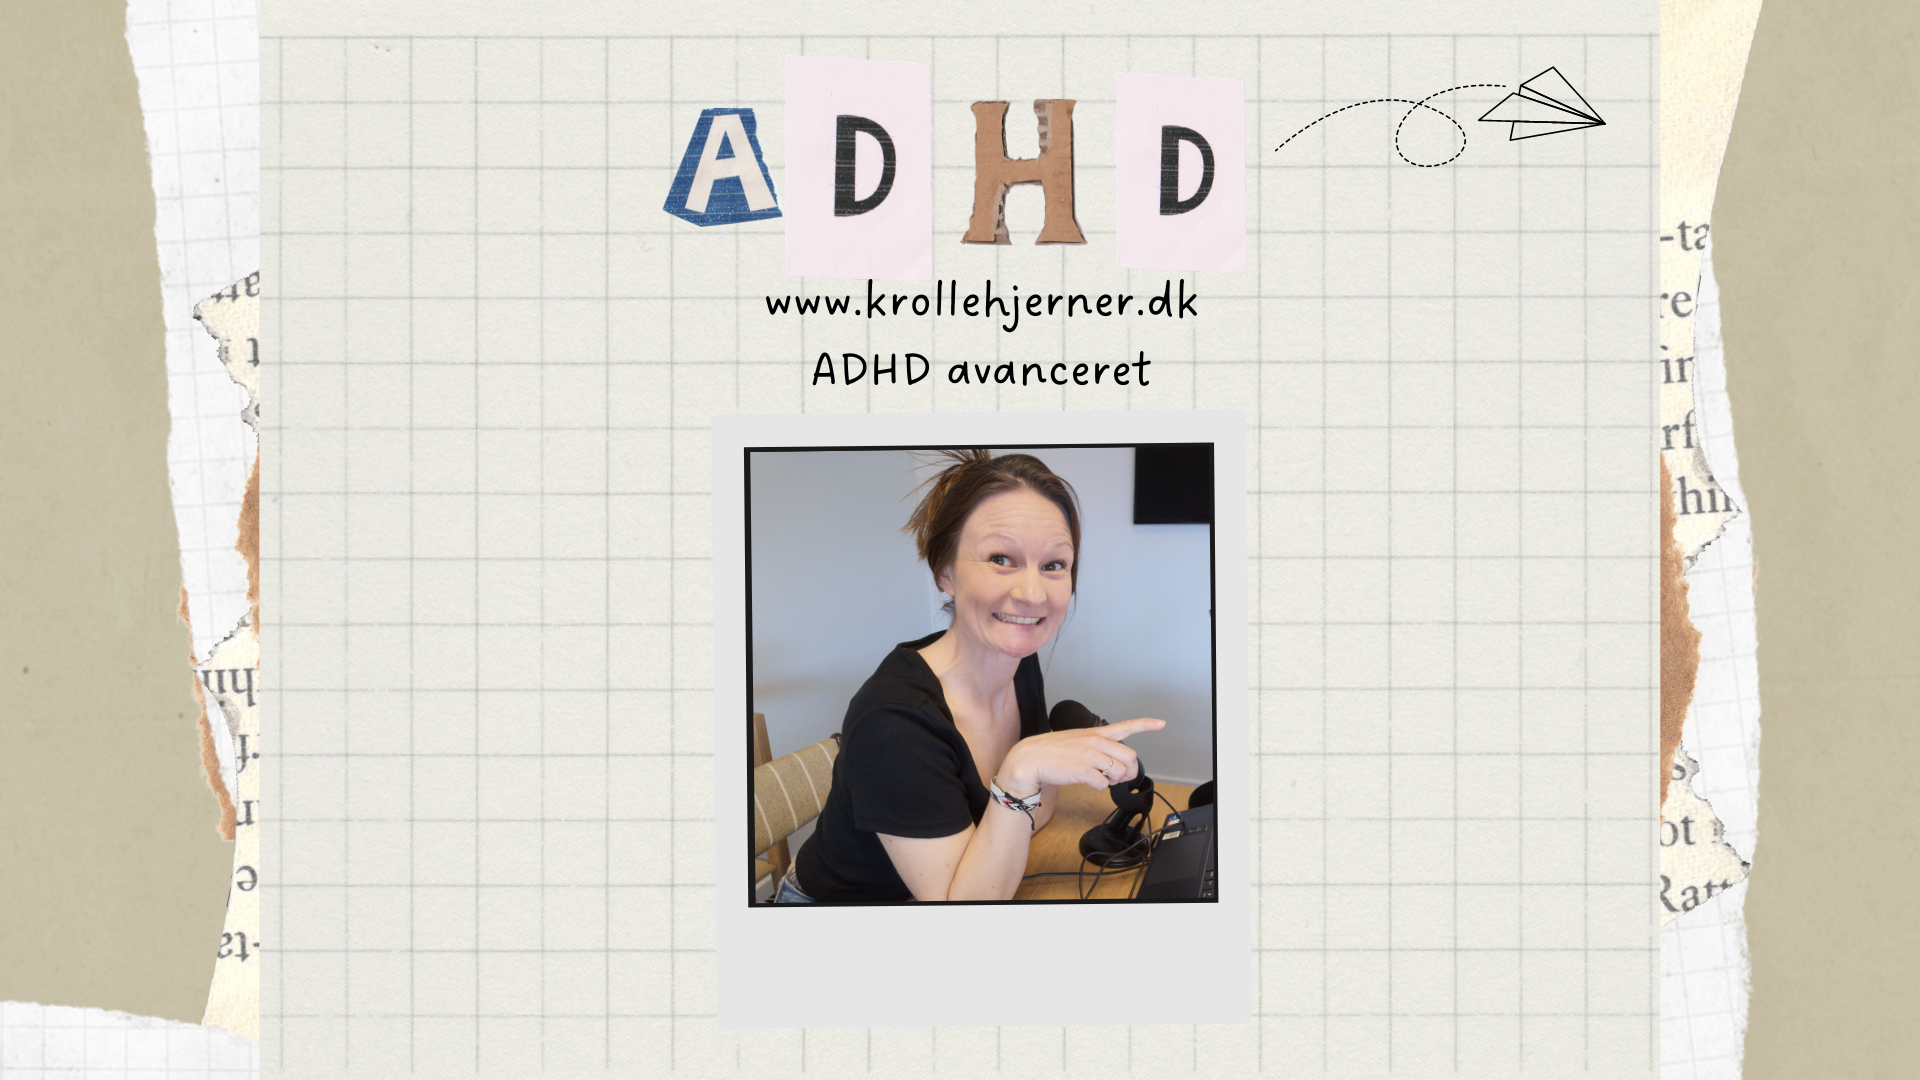 ADHD - avanceret